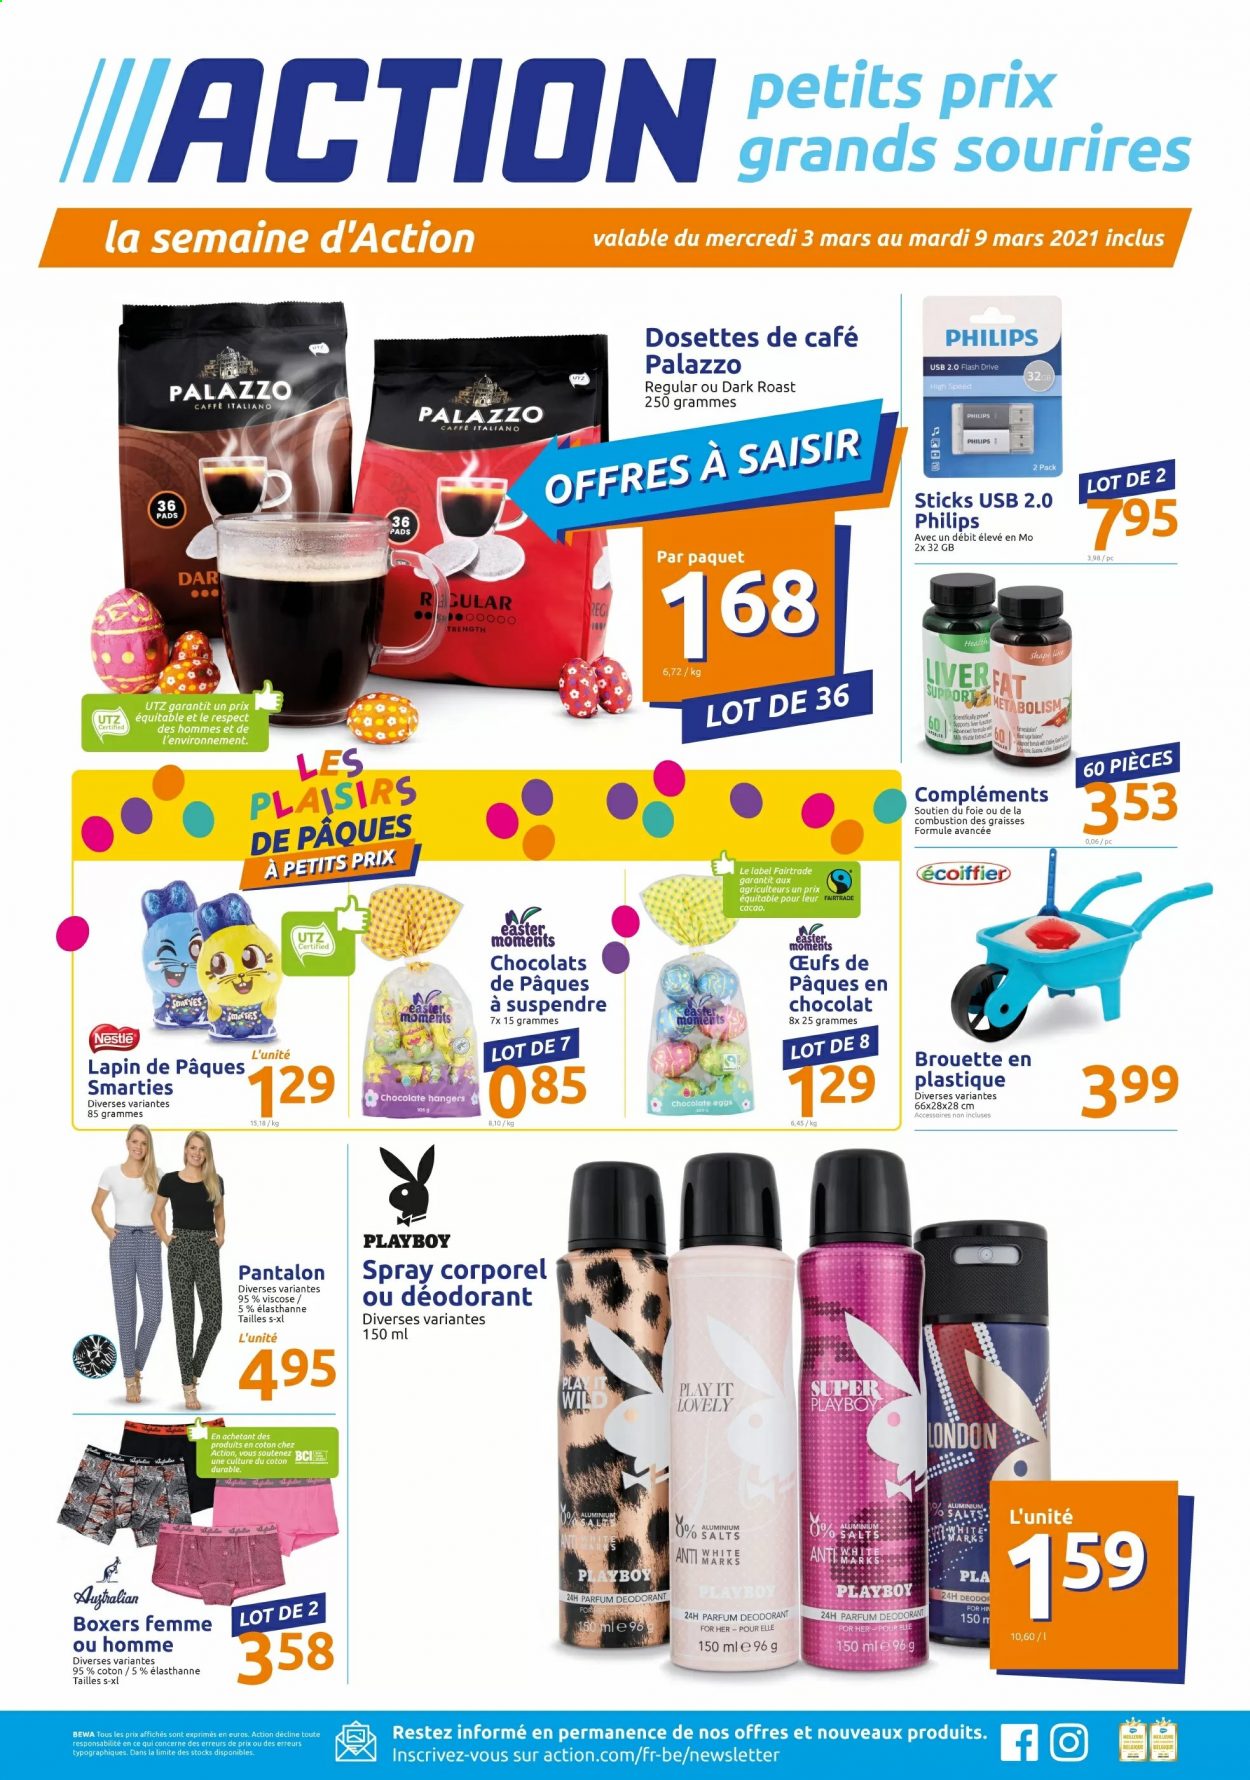 thumbnail - Catalogue Action - 03/03/2021 - 09/03/2021 - Produits soldés - Philips, Smarties, Nestlé, dosettes de café, déodorant, desodorisant, Playboy, pantalon, boxers, brouette. Page 1.